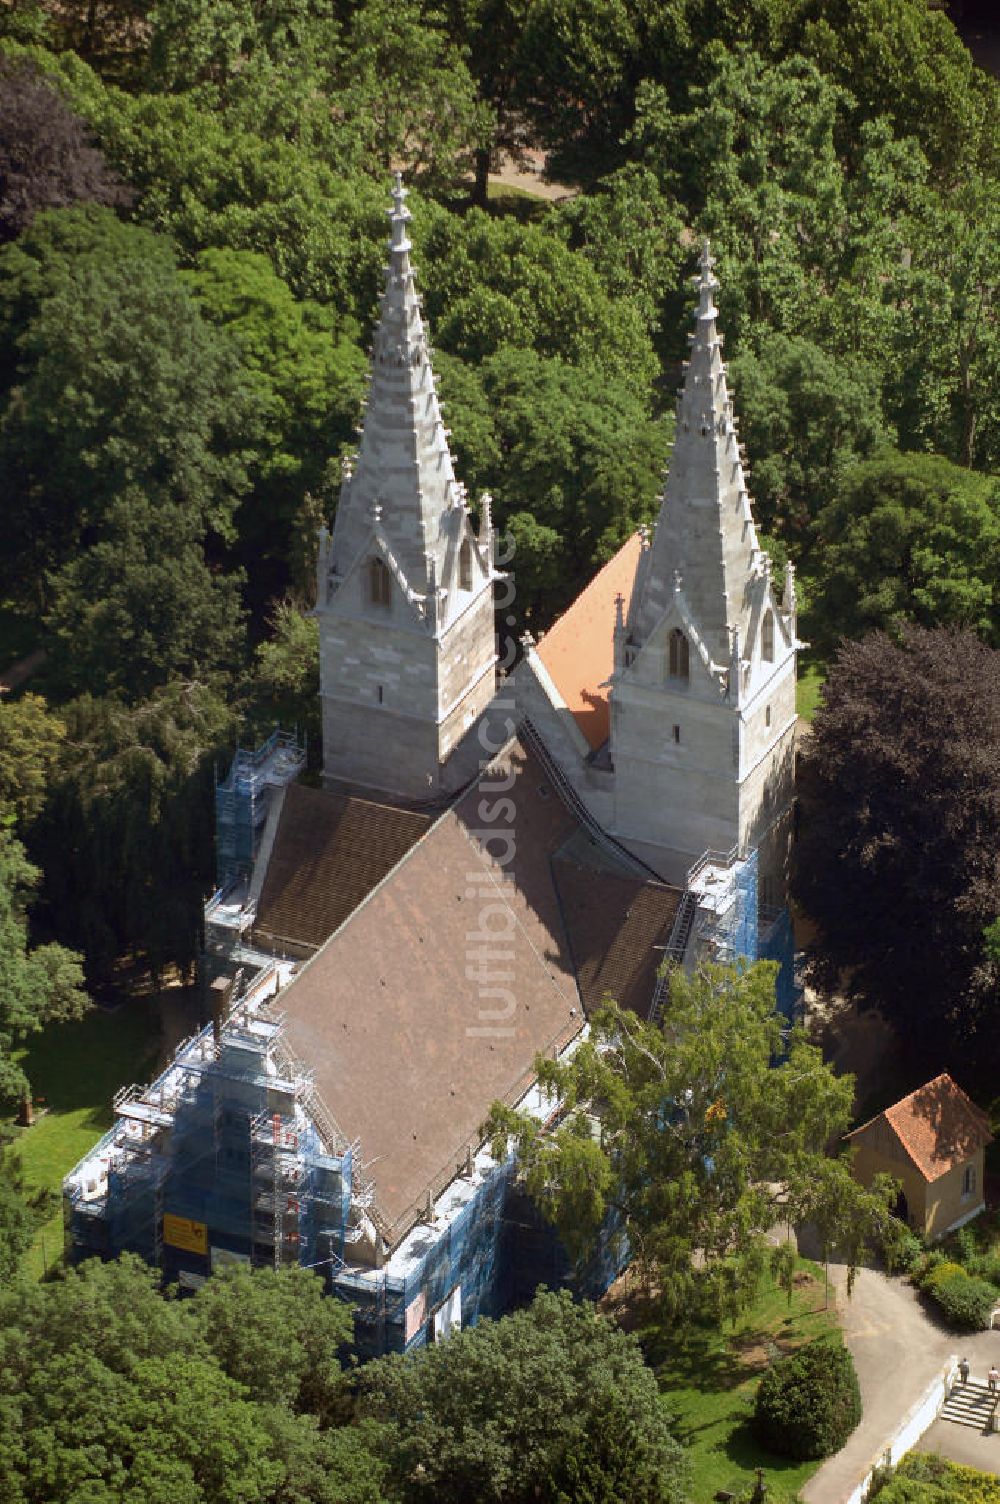 Göppingen aus der Vogelperspektive: Blick auf die Oberhofenkirche in Göppingen